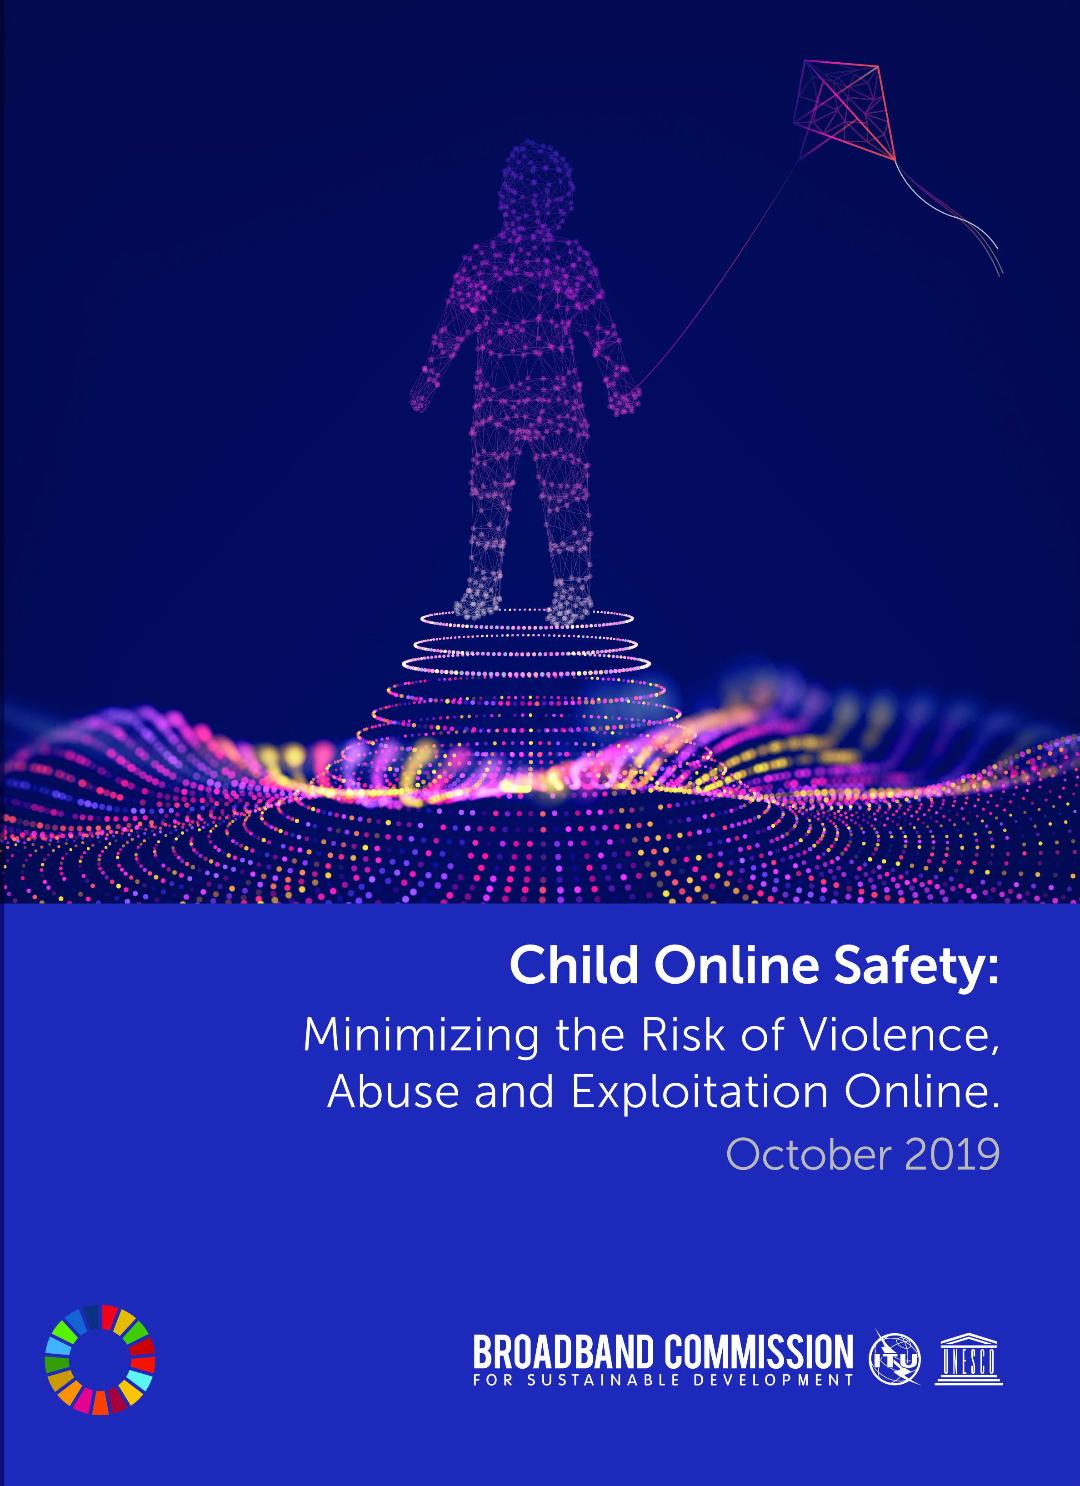 “زين” تنشر تقريرا حول “سلامة الطفل على الإنترنت”